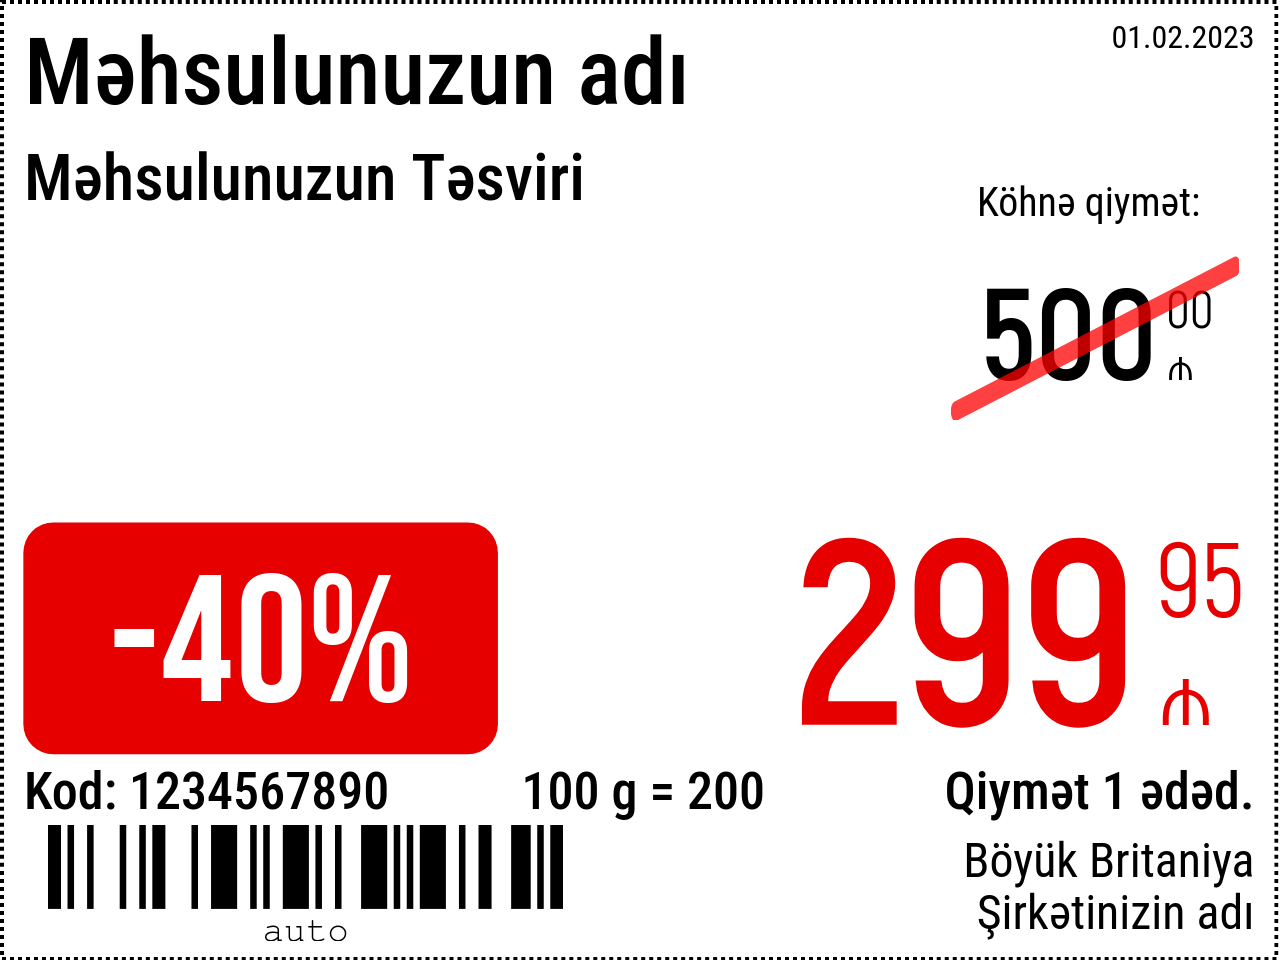 Qiymət etiketi Yeni / 8x6 / Reklam 3